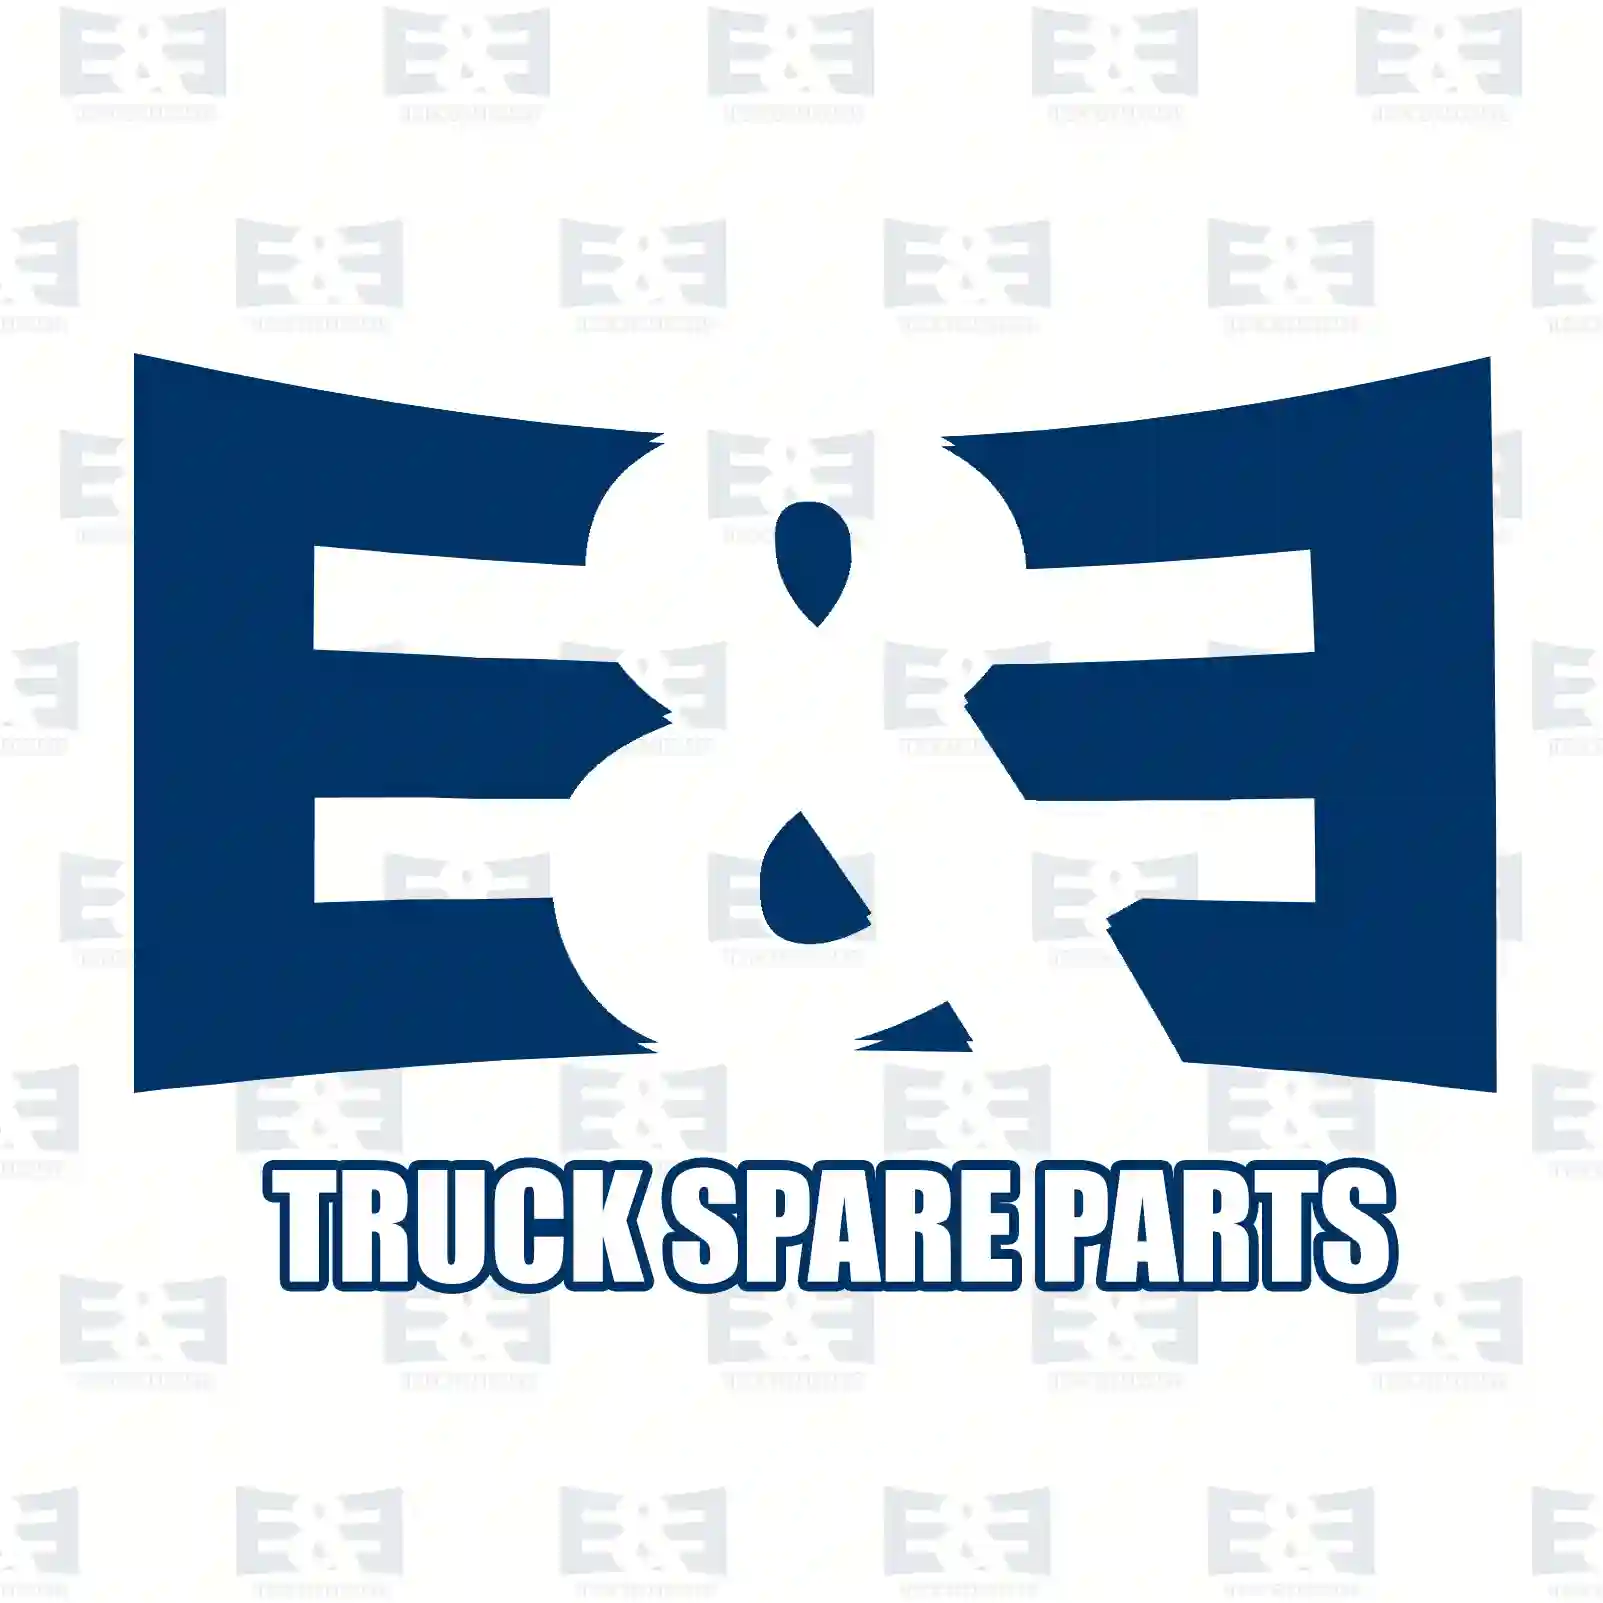  Fuse || E&E Truck Spare Parts | Truck Spare Parts, Auotomotive Spare Parts